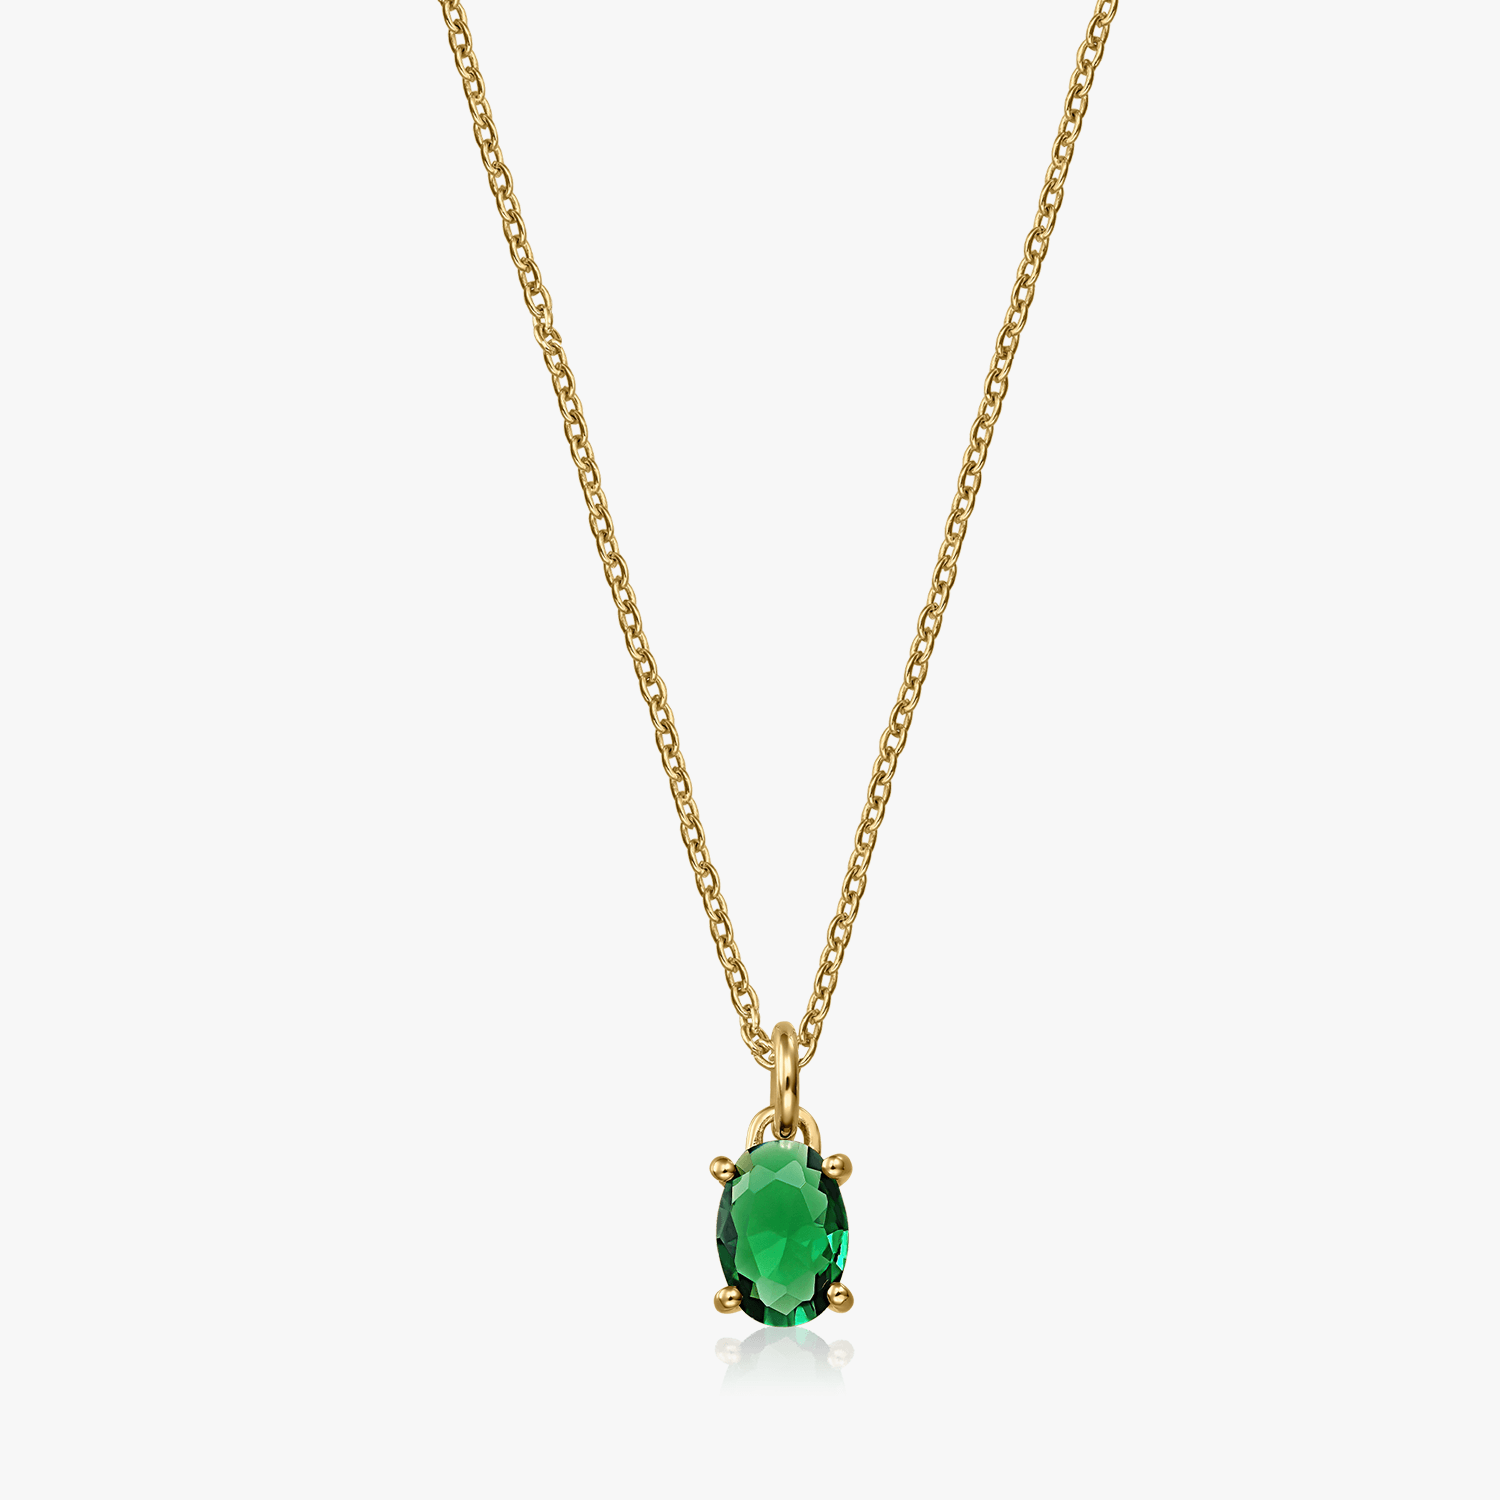 Golden Reina silver necklace - Green Zirconium